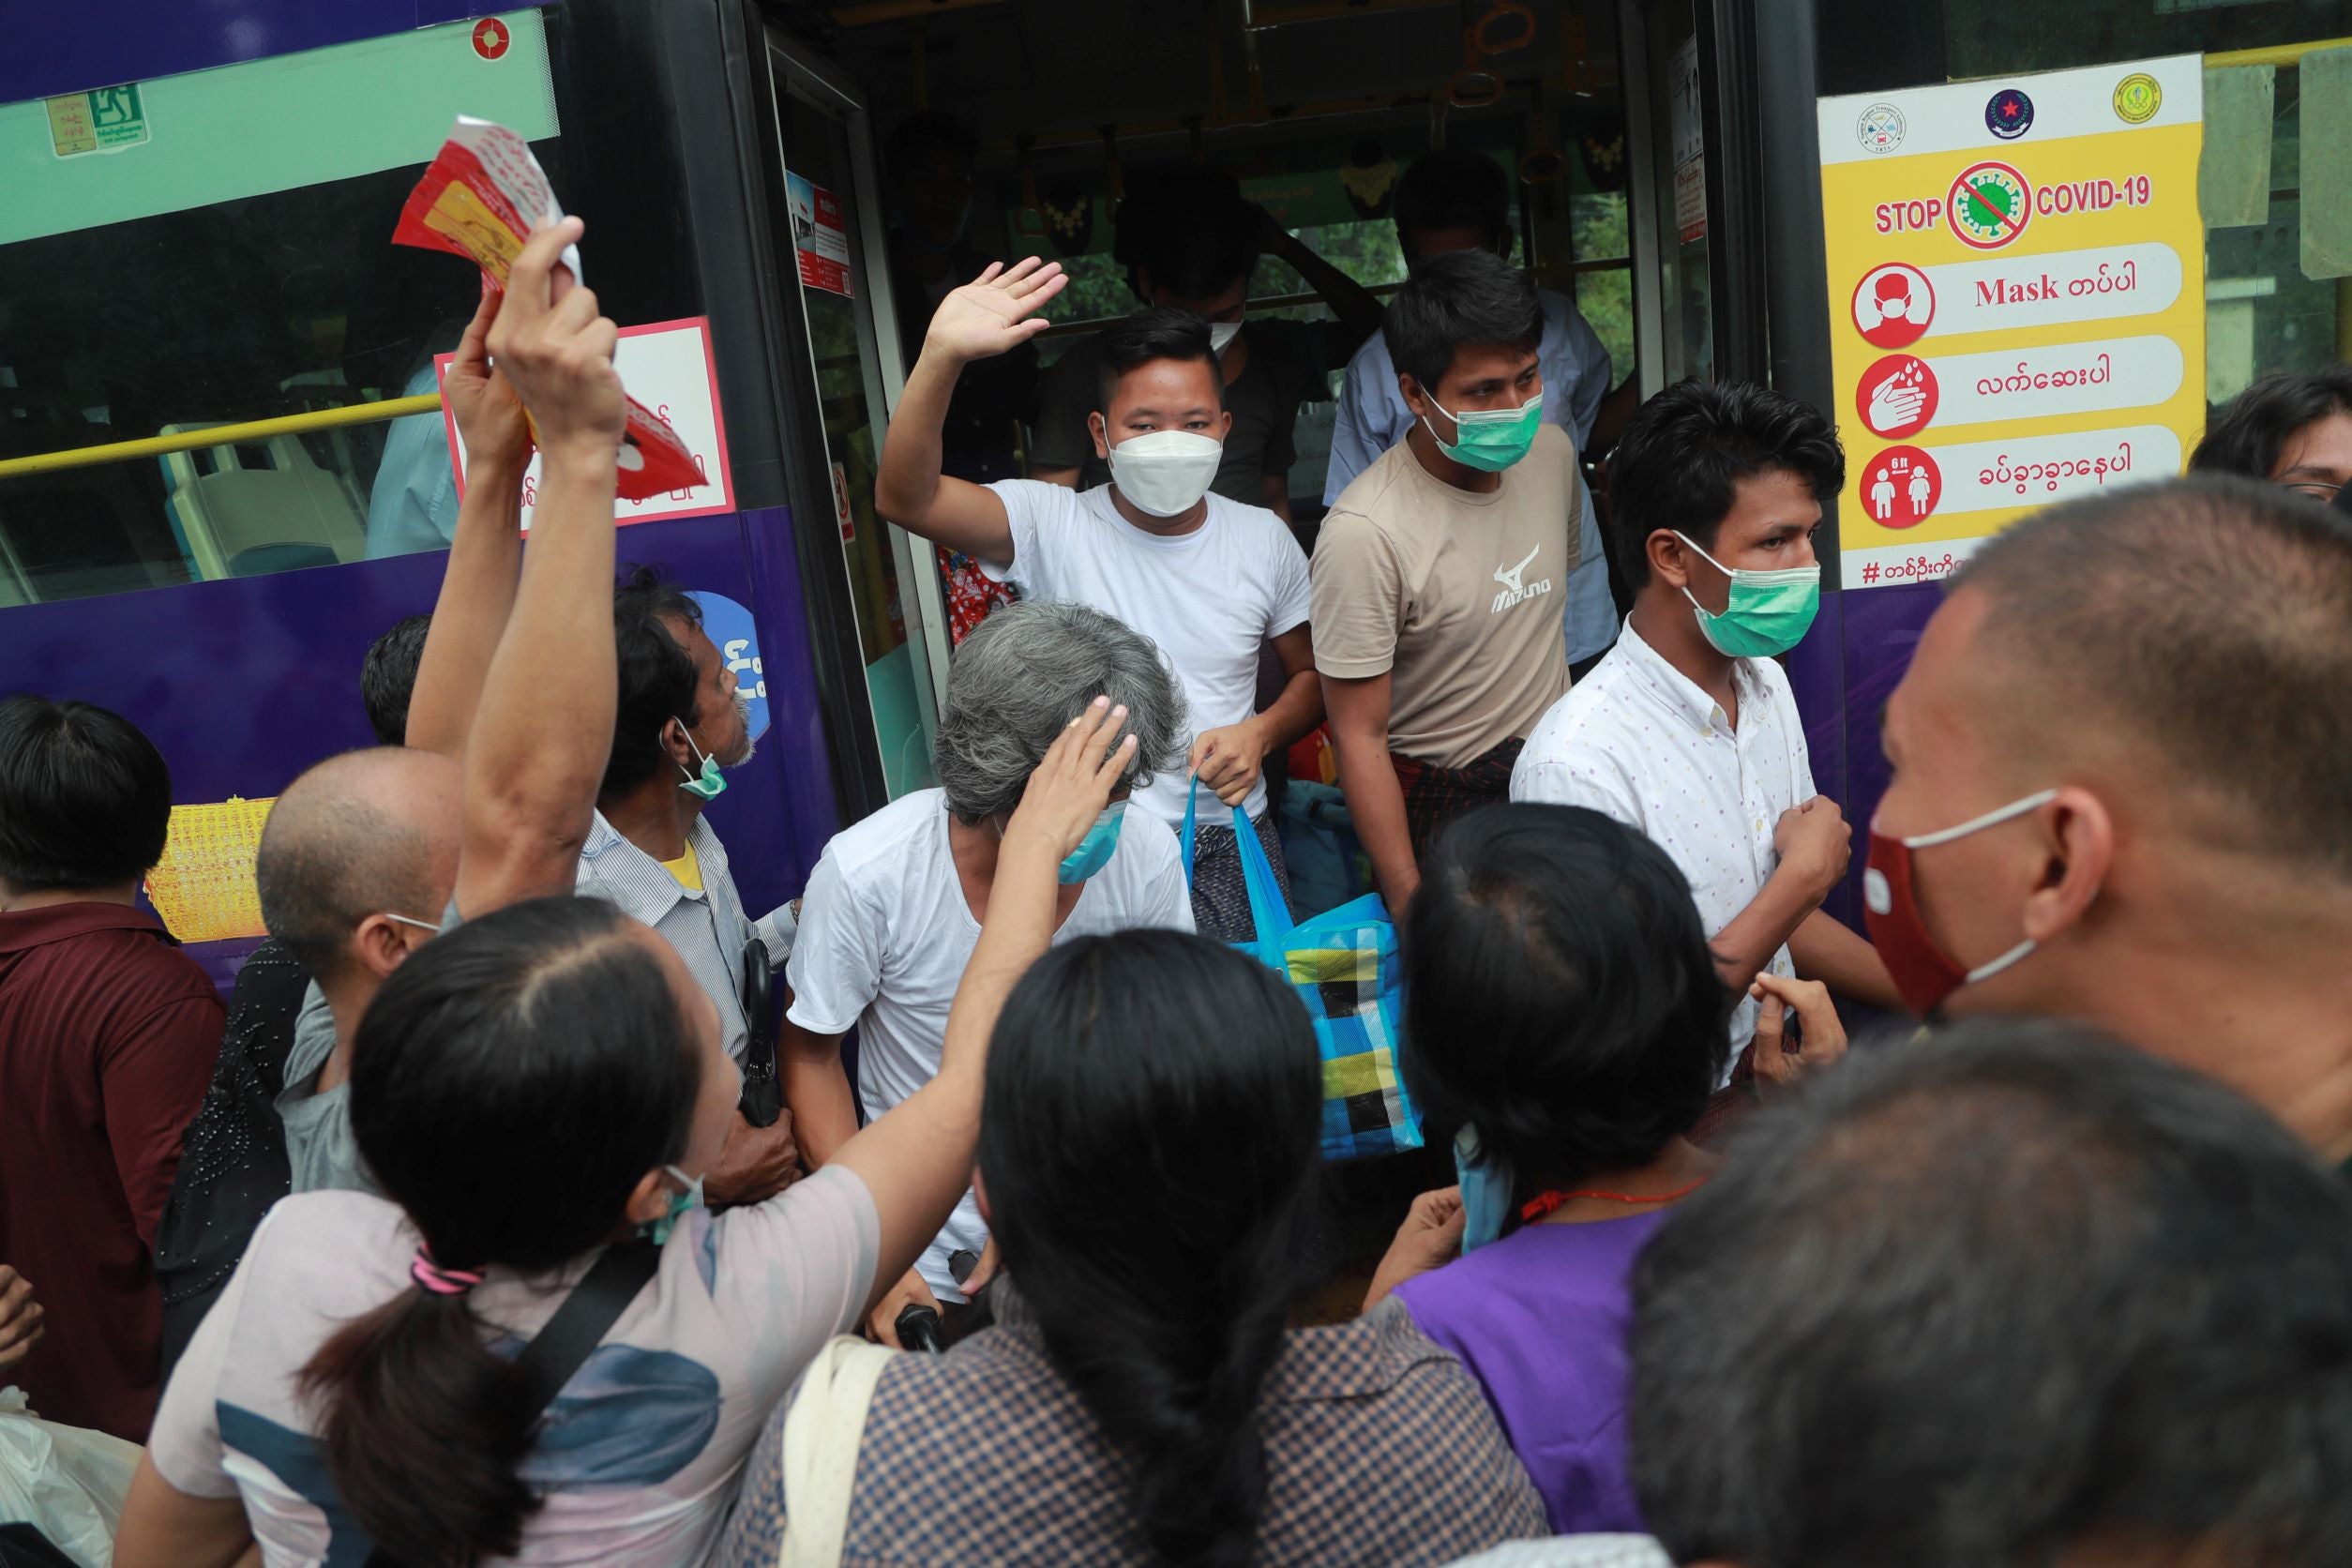 Des détenus libérés de la prison d'Insein descendaient d’un bus à Yangon, au Myanmar, le 19 octobre 2021, après l’annonce par le gouvernement d’une mesure concernant la libération de nombreux prisonniers.